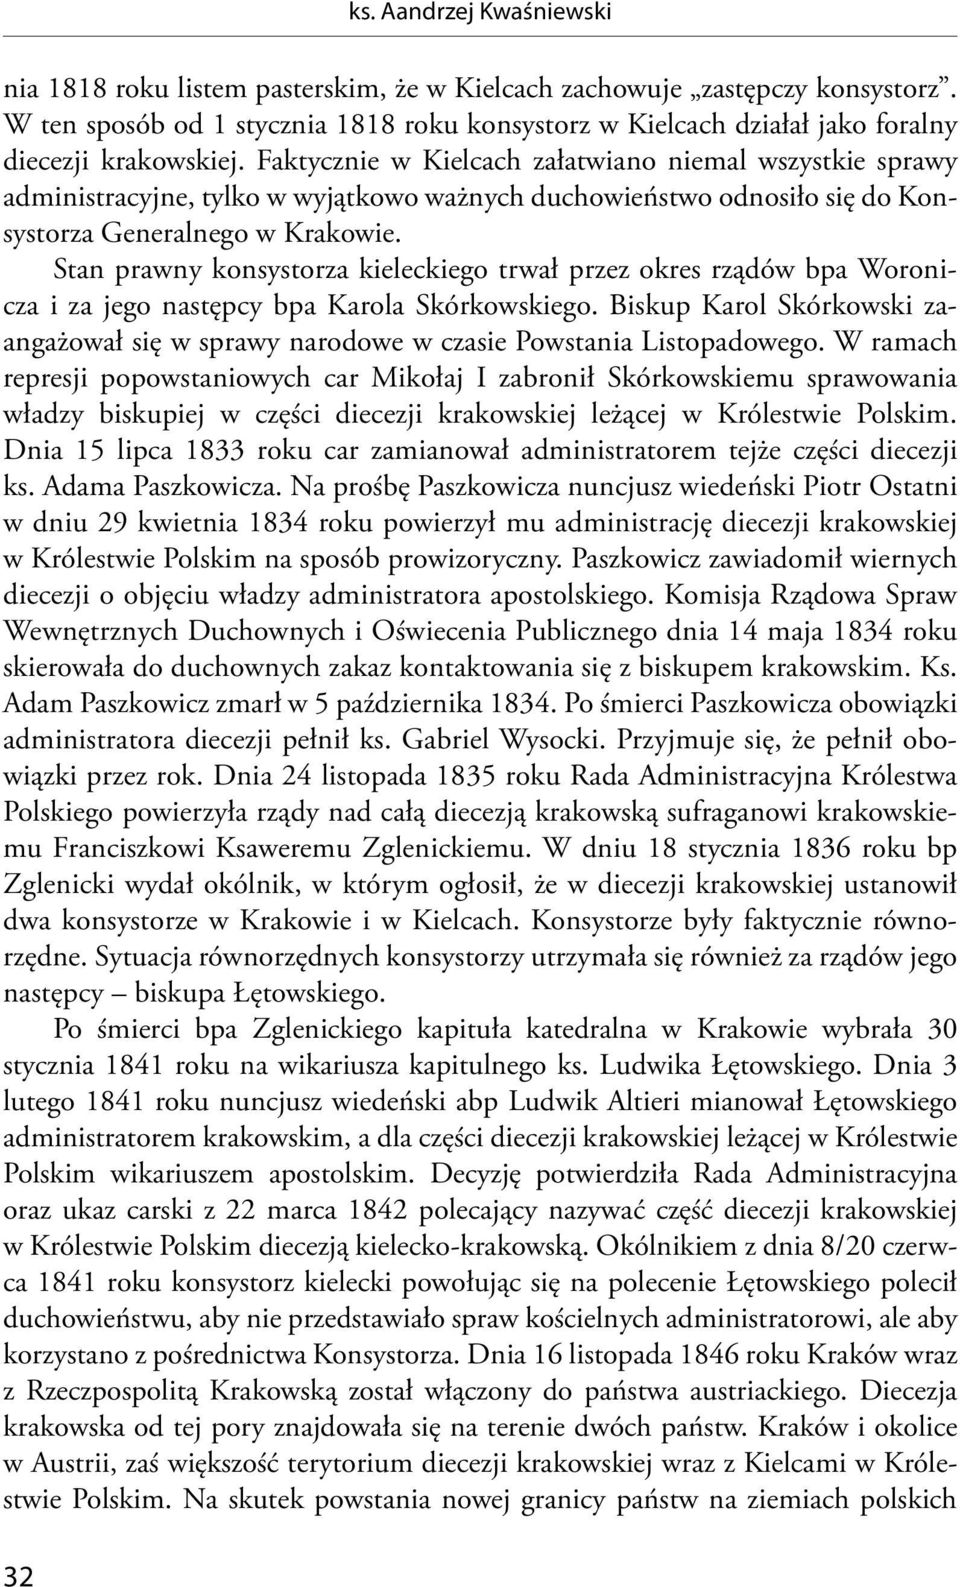 Faktycznie w Kielcach załatwiano niemal wszystkie sprawy administracyjne, tylko w wyjątkowo ważnych duchowieństwo odnosiło się do Konsystorza Generalnego w Krakowie.